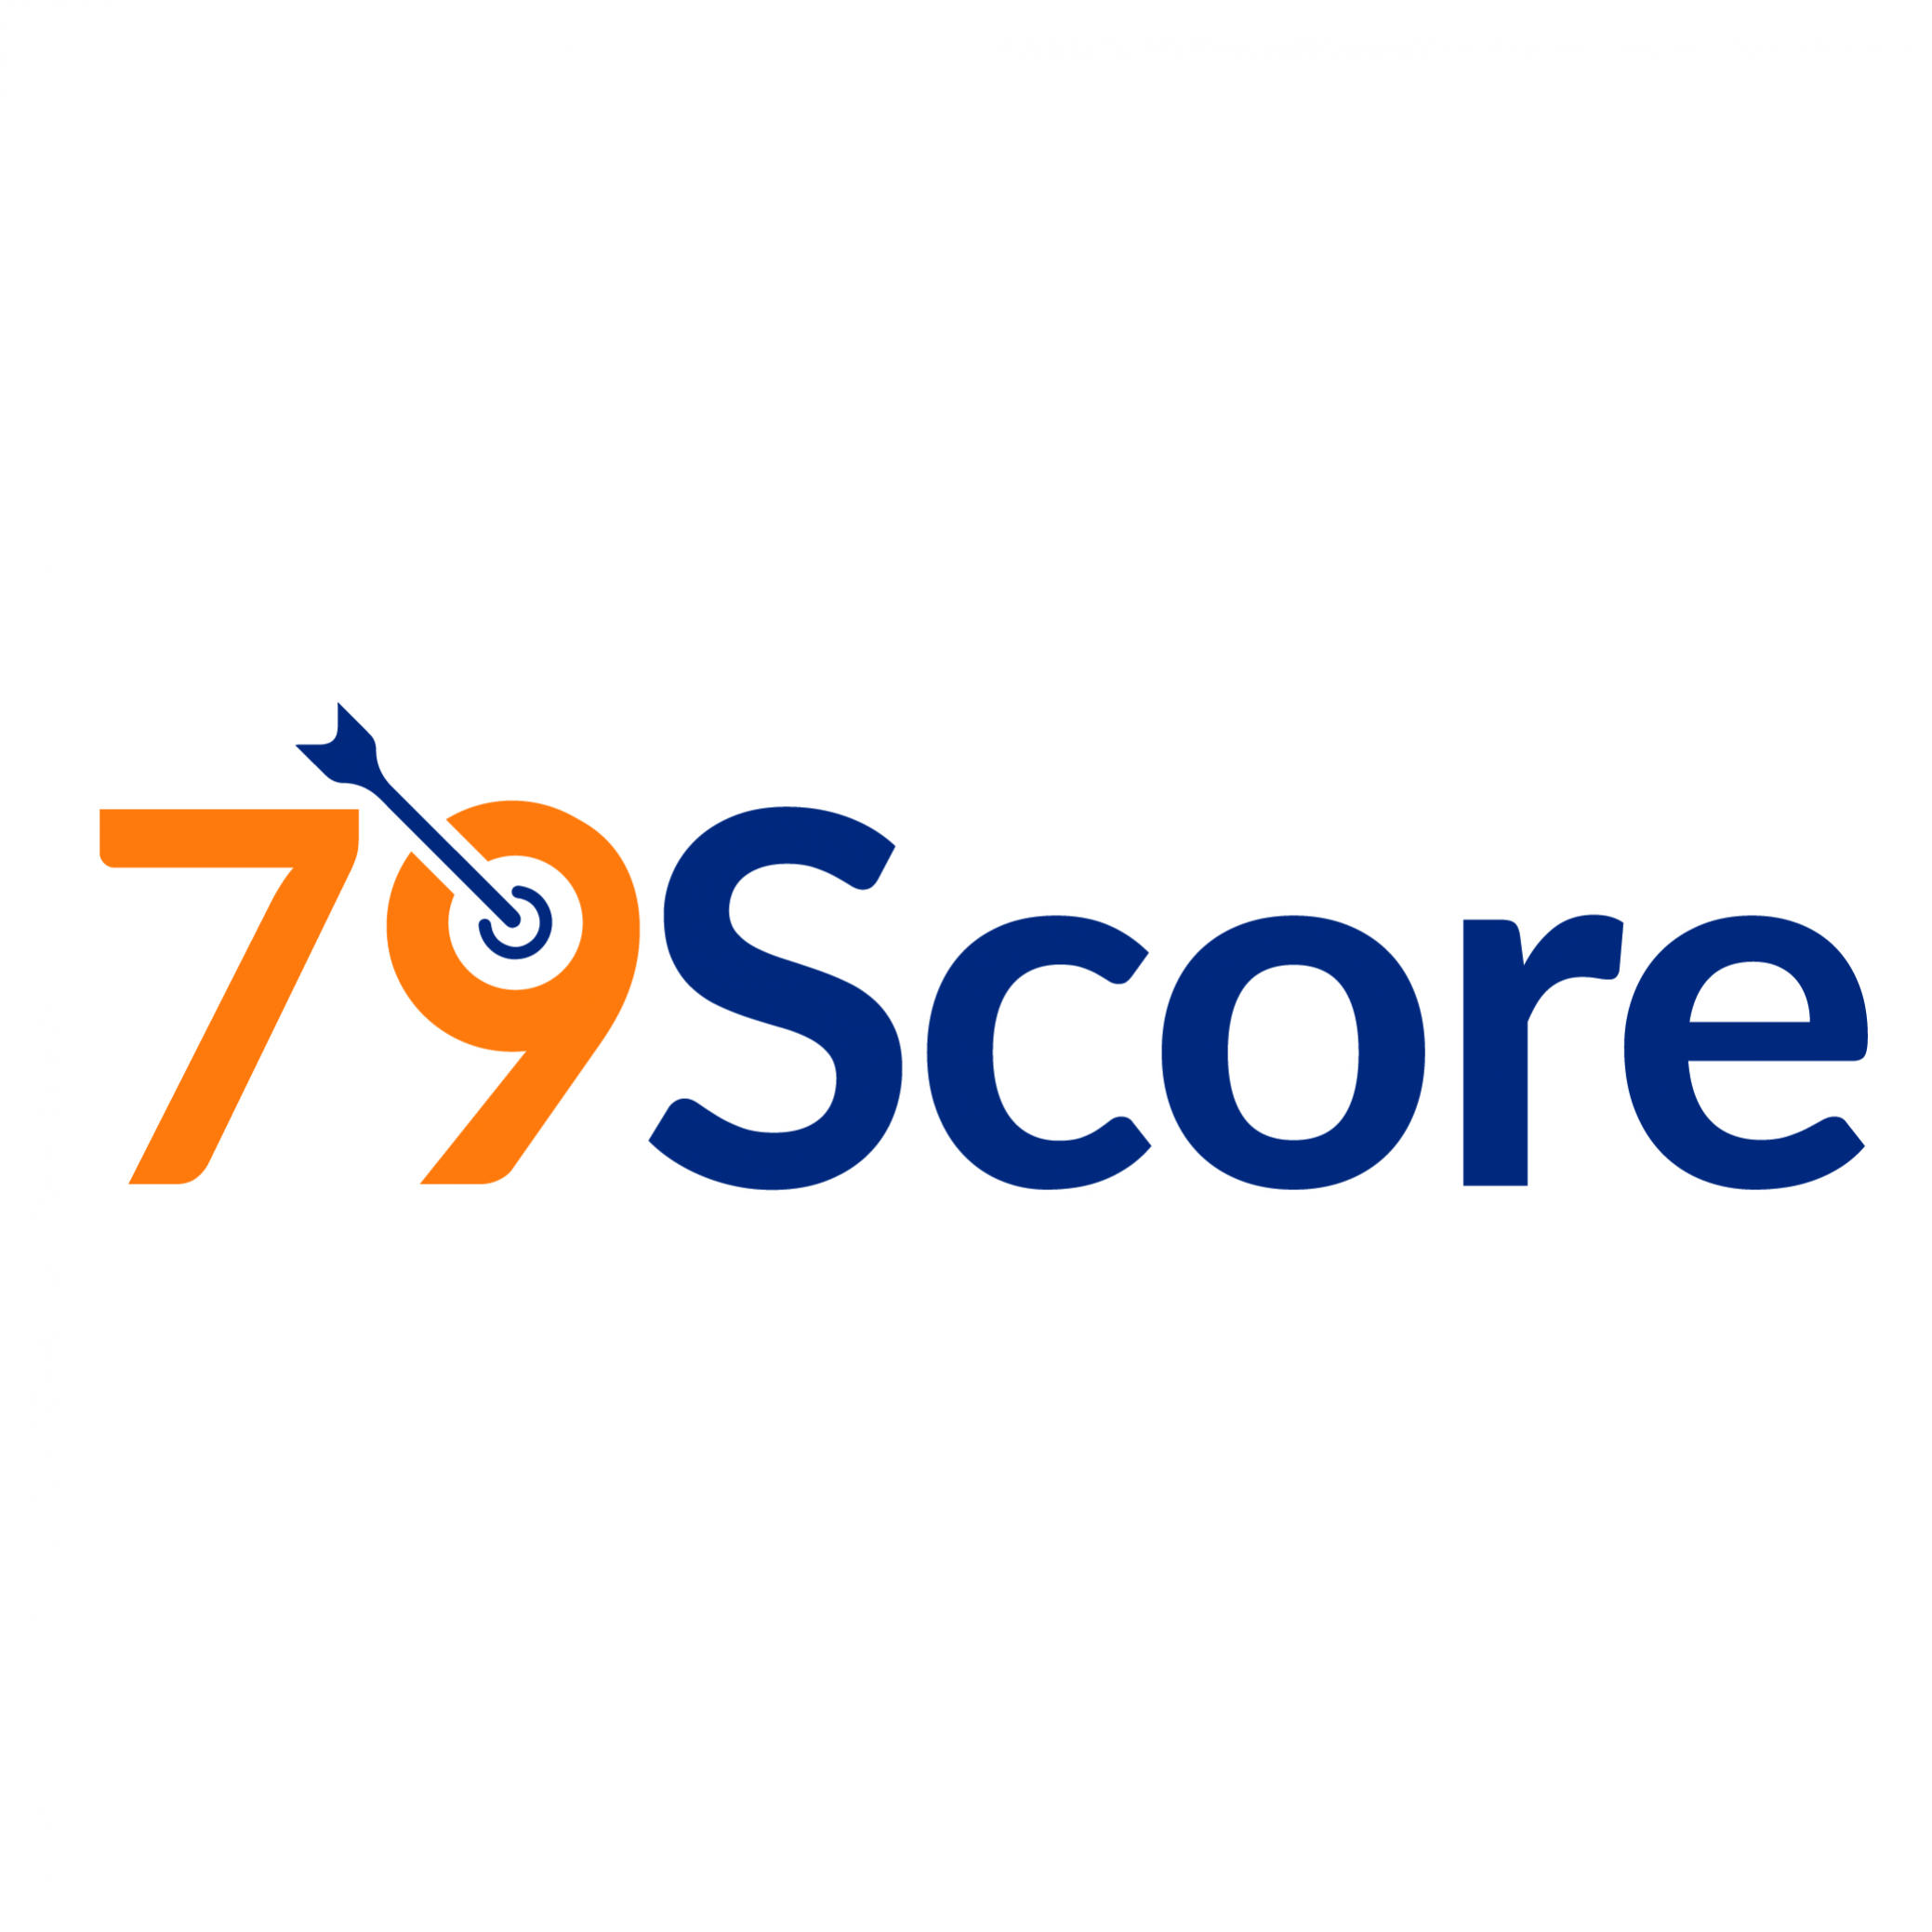 79Score